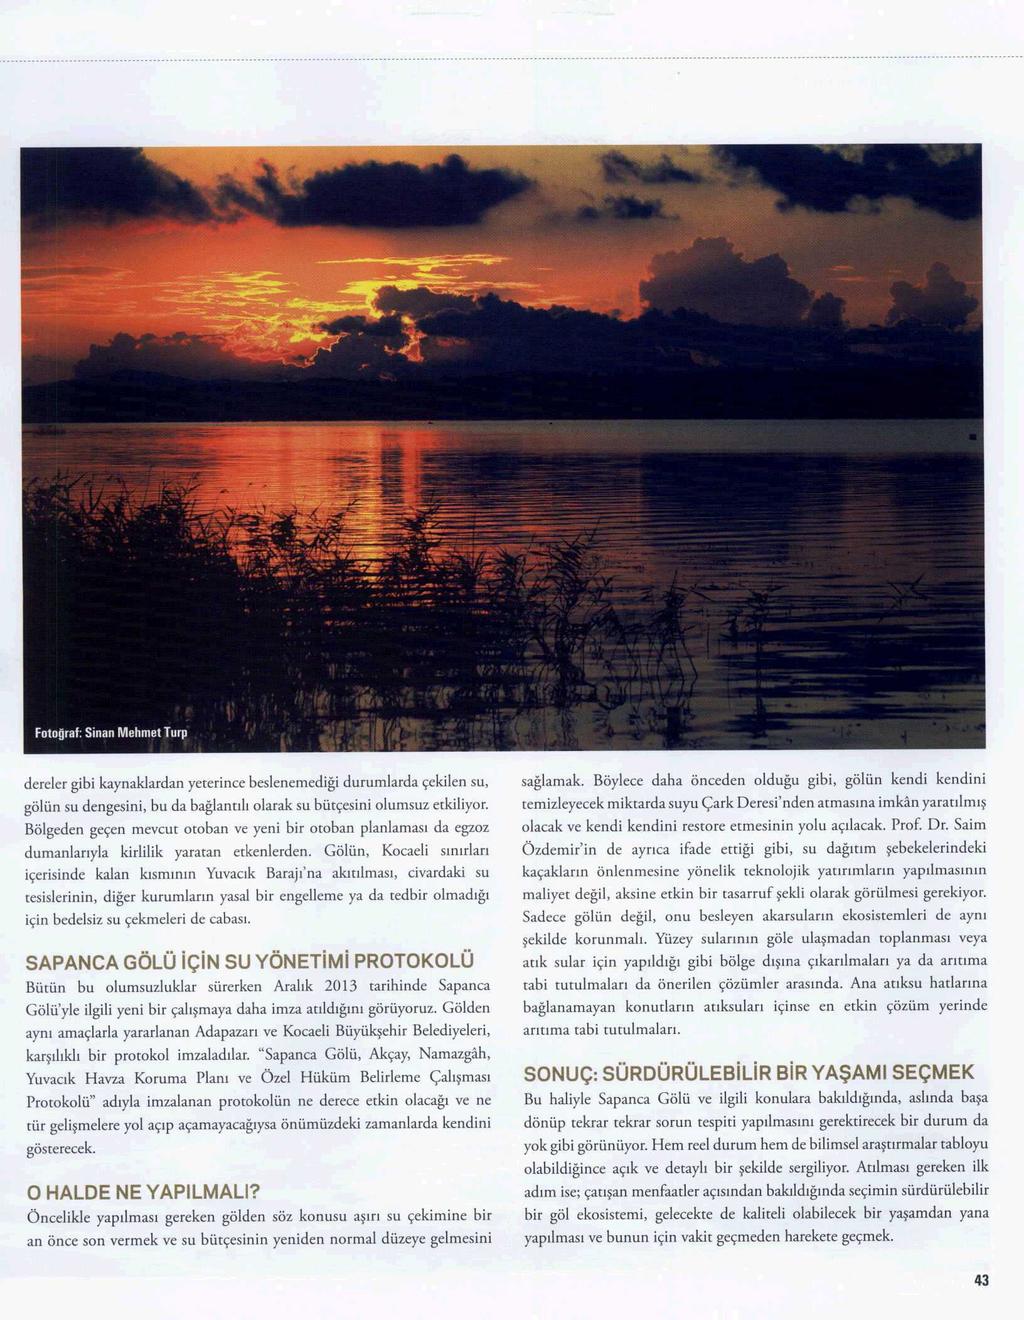 IKI SEHIR ARASINDA DIRENEN RIR GÖL SAPANCA Yayın Adı : Deniz Temiz Sayfa